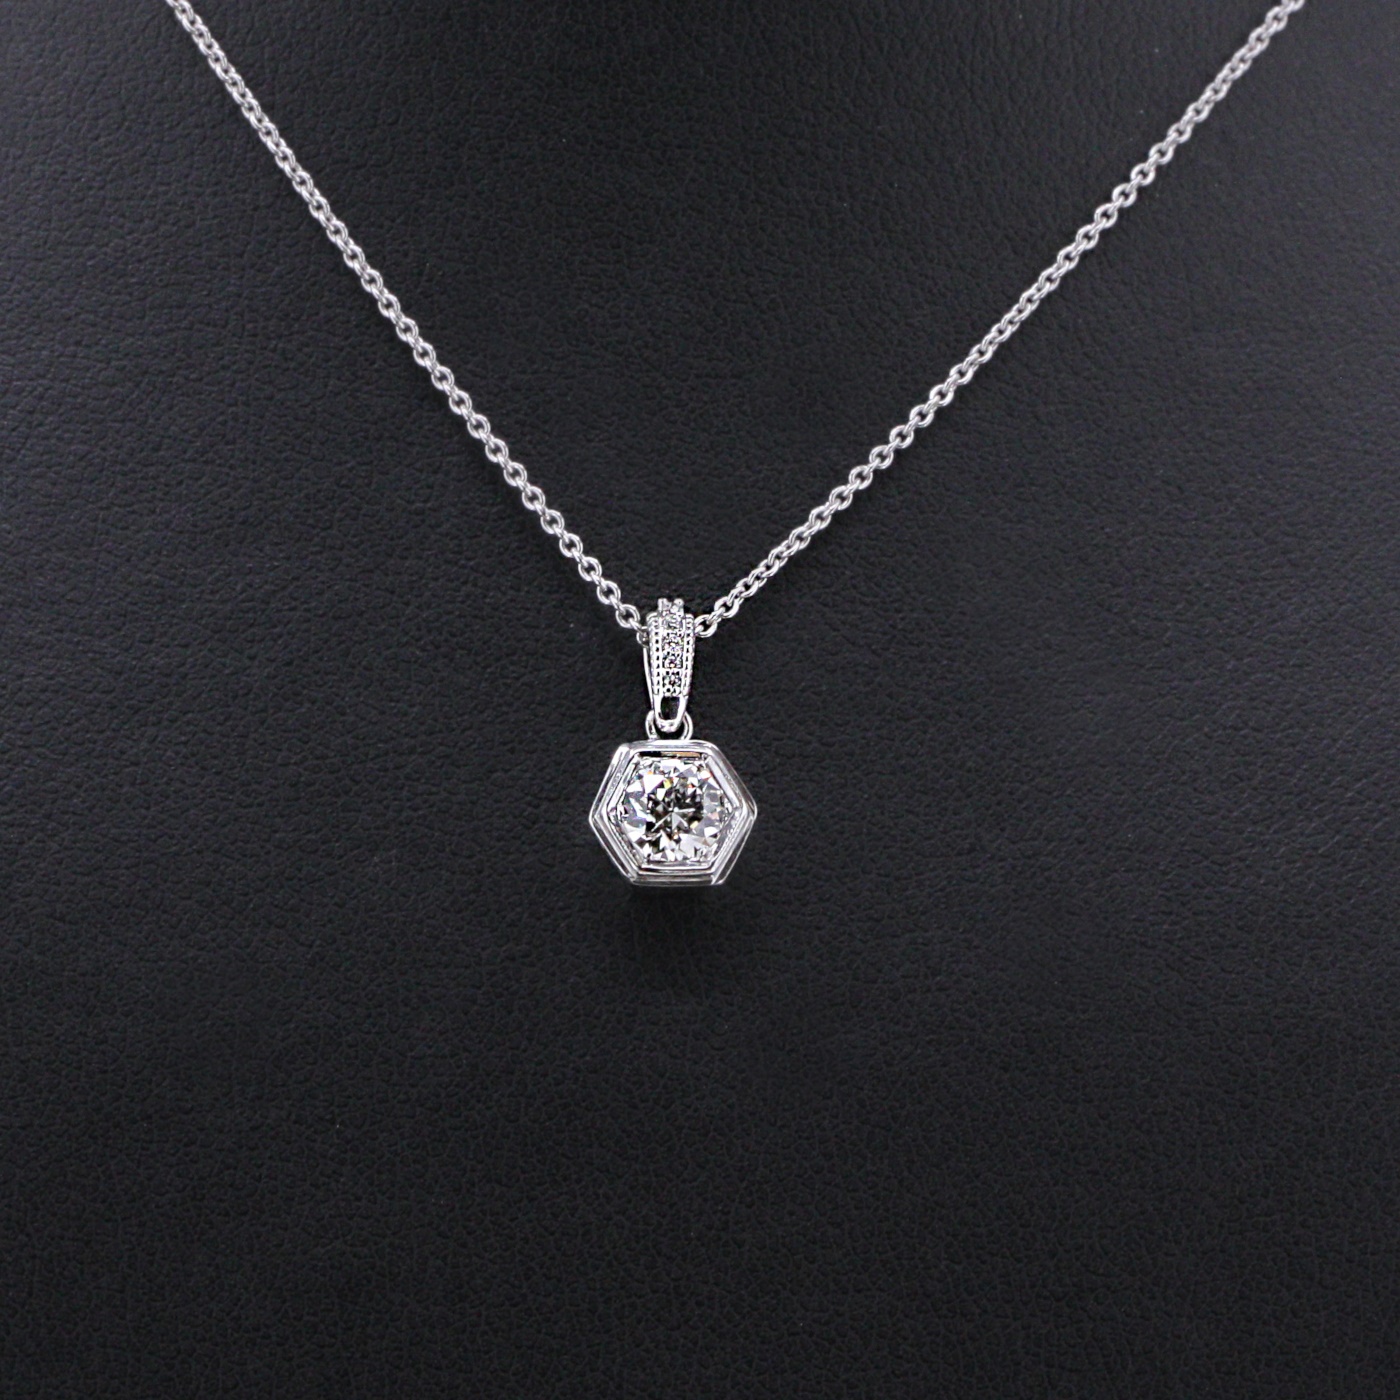 Diamond Necklaces: Pendants, Chains & More | Blue Nile